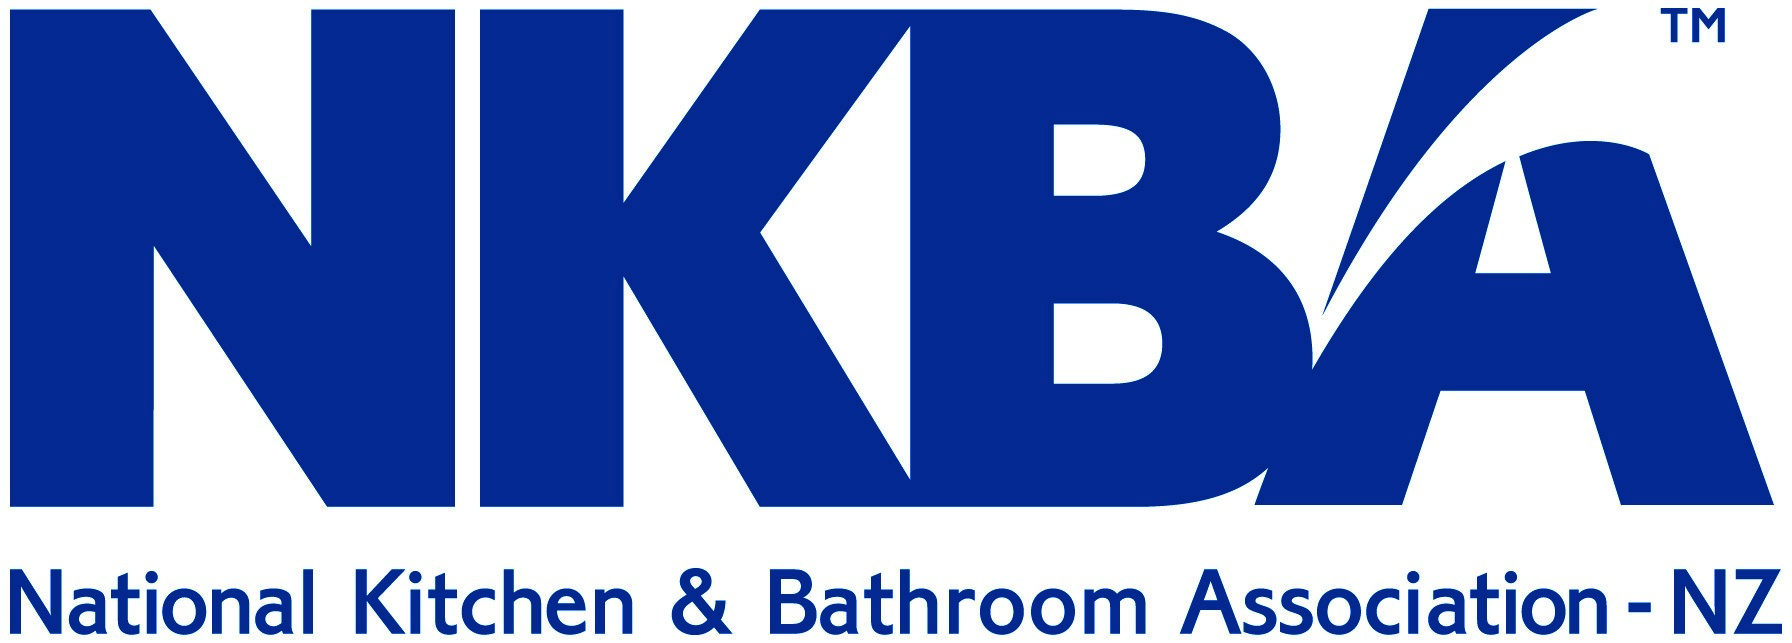 NKBA logo.jpg